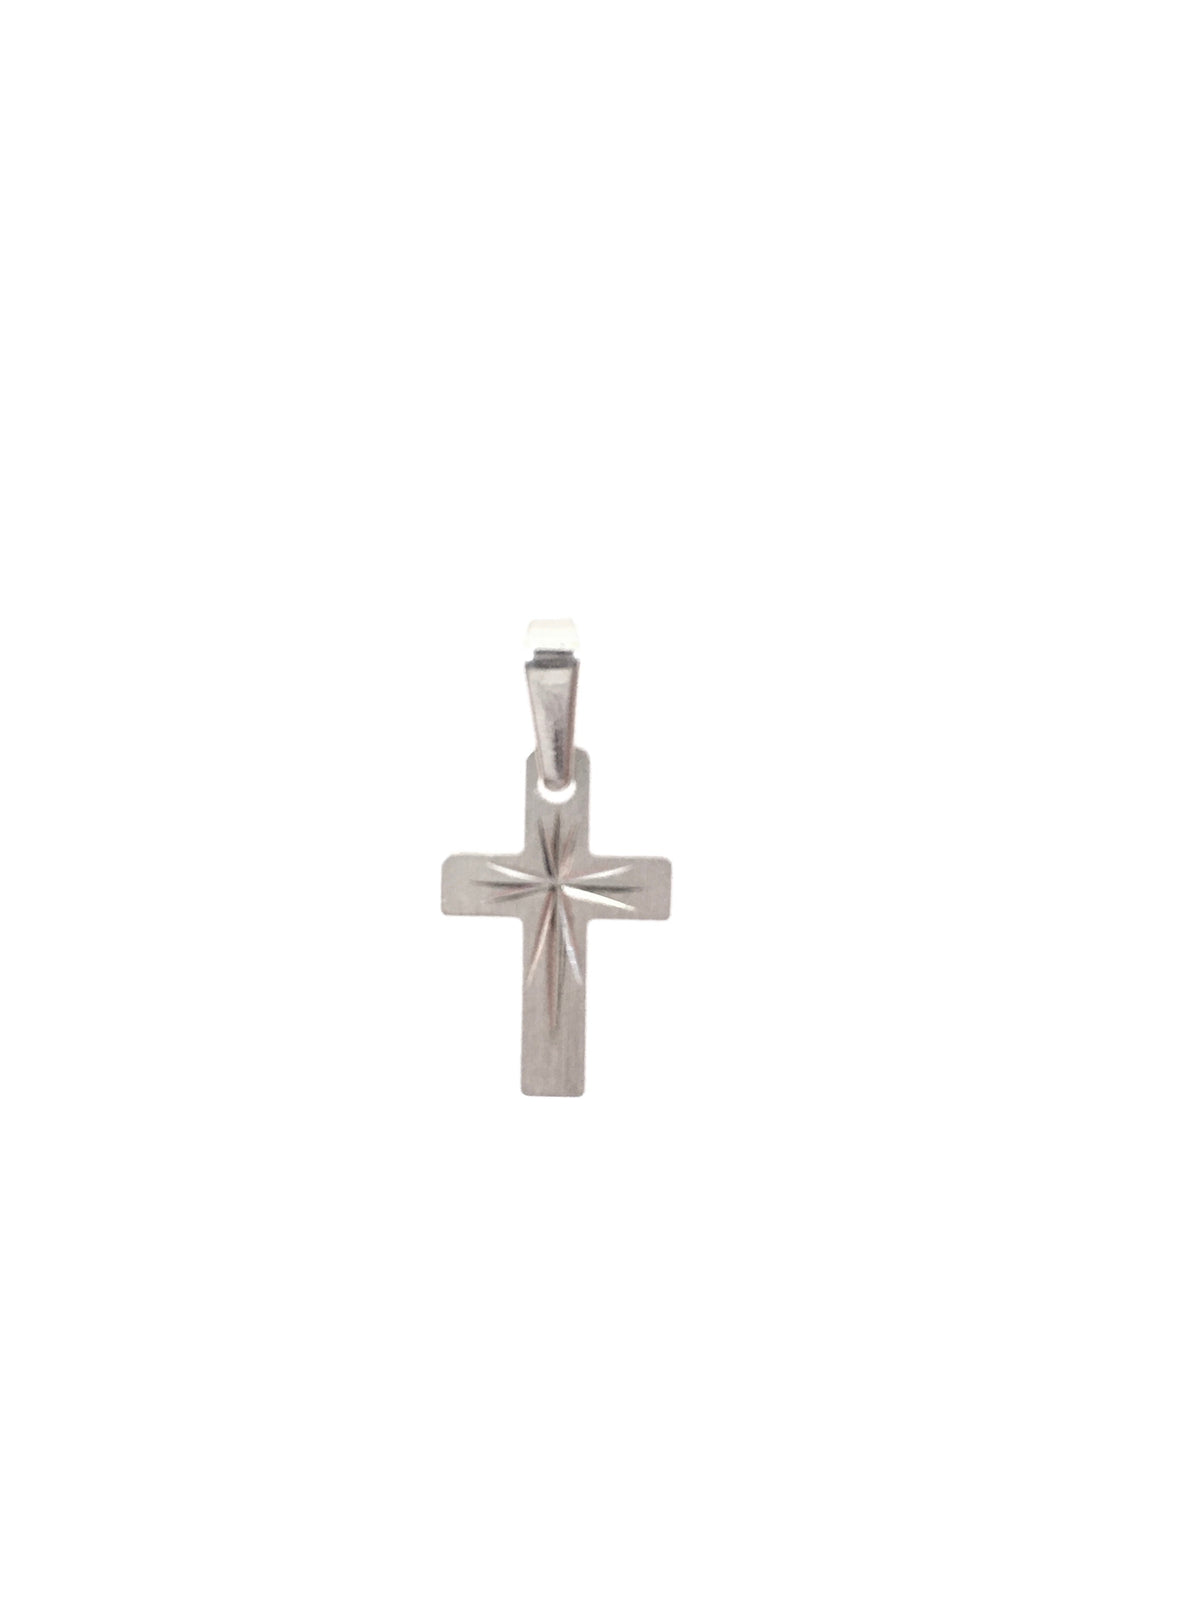 Dije de cruz central grabado en oro blanco de 10 quilates, 23 mm x 12 mm